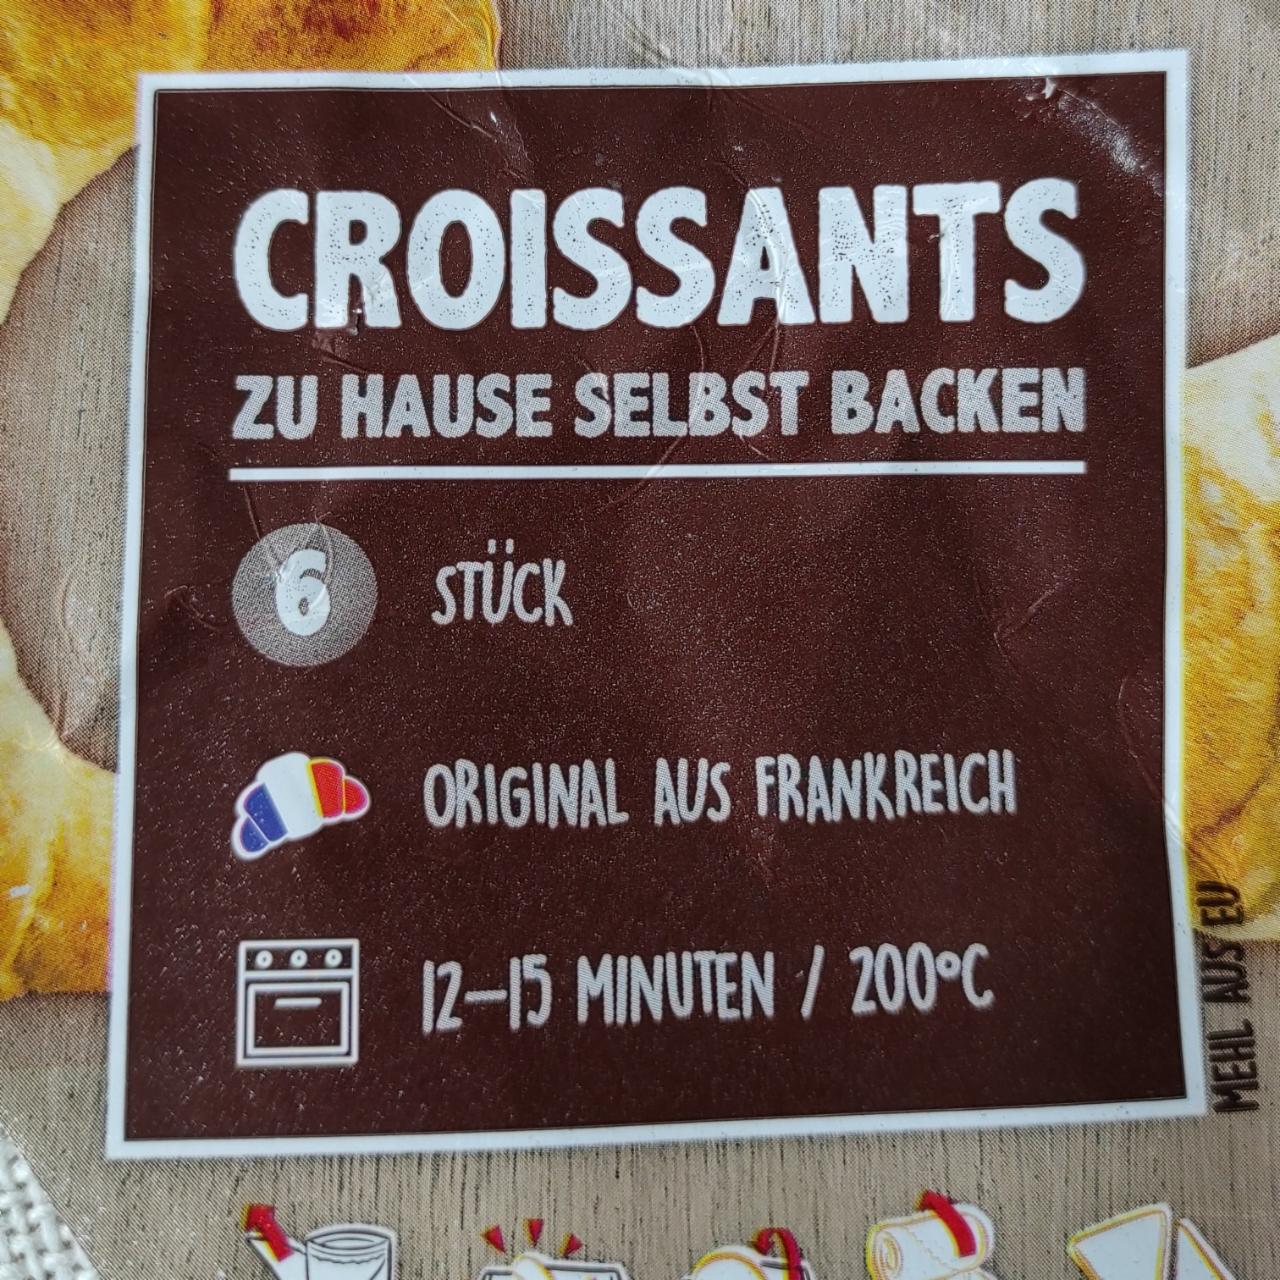 Zdjęcia - croissants zu hause selbst backen